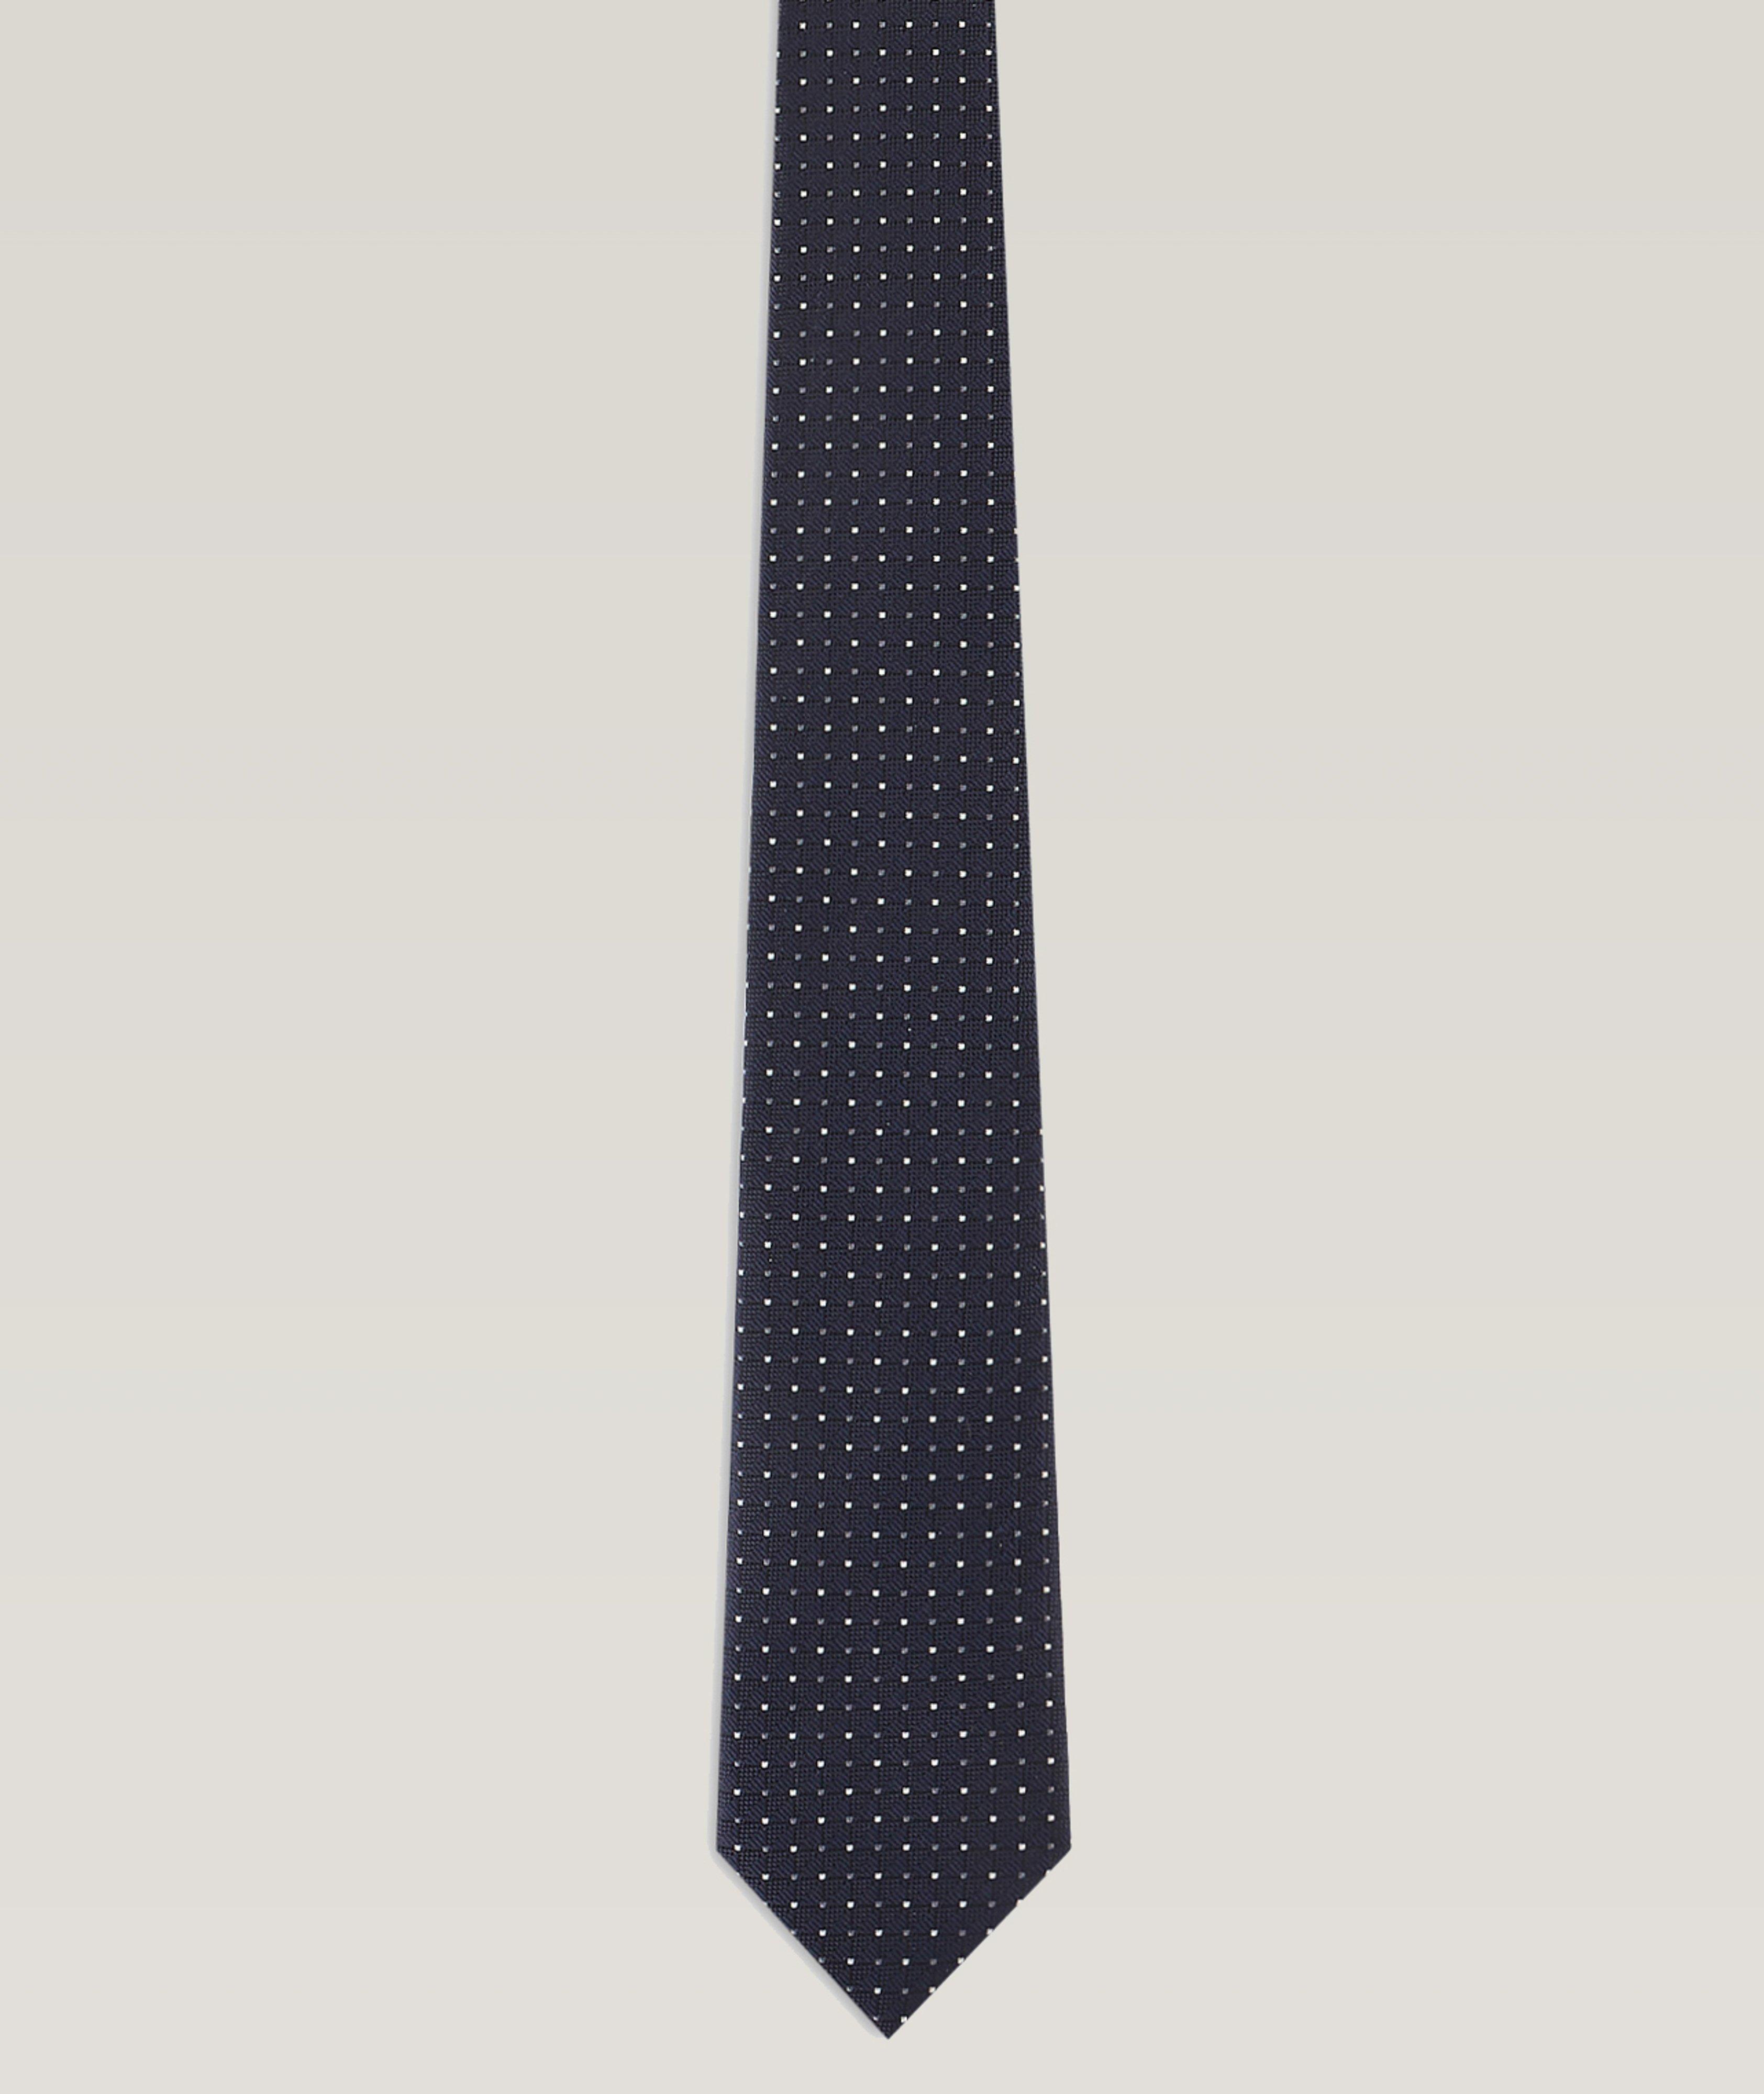 Cravate en soie à motif pointillé image 0